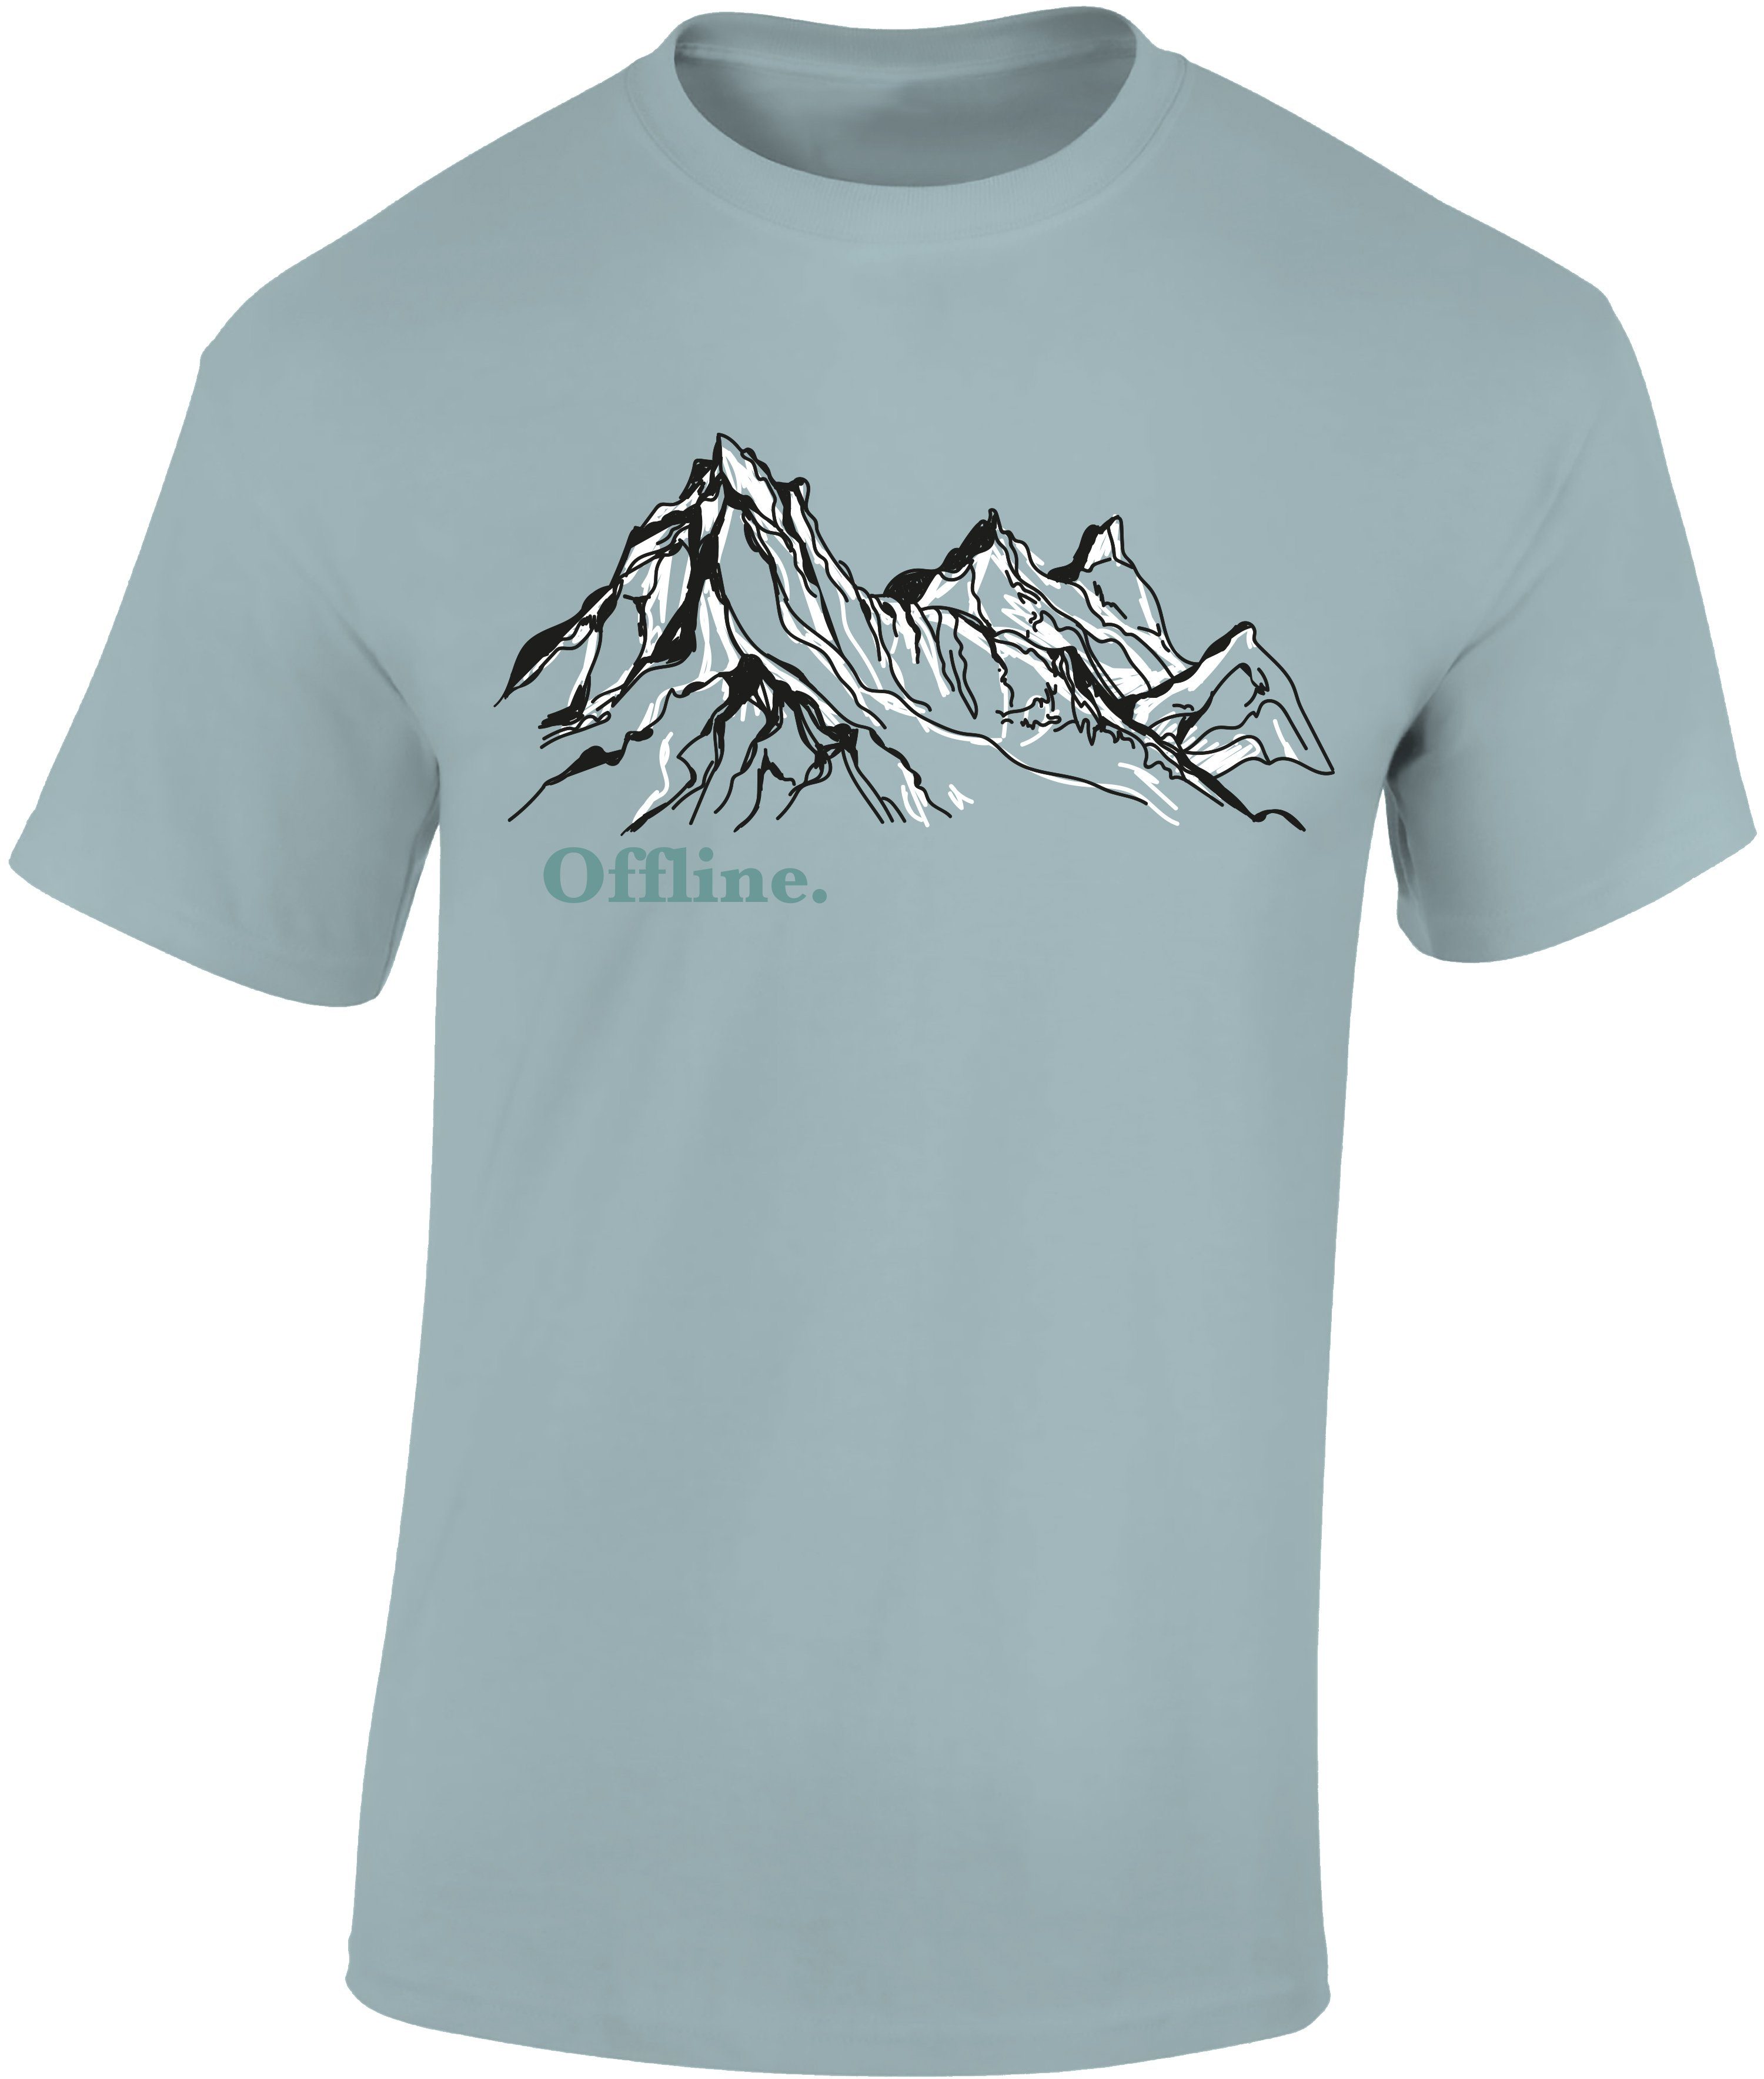 Baddery Print-Shirt Wander Tshirt : Offline - Kletter T-Shirt für  Wanderfreunde hochwertiger Siebdruck, aus Baumwolle